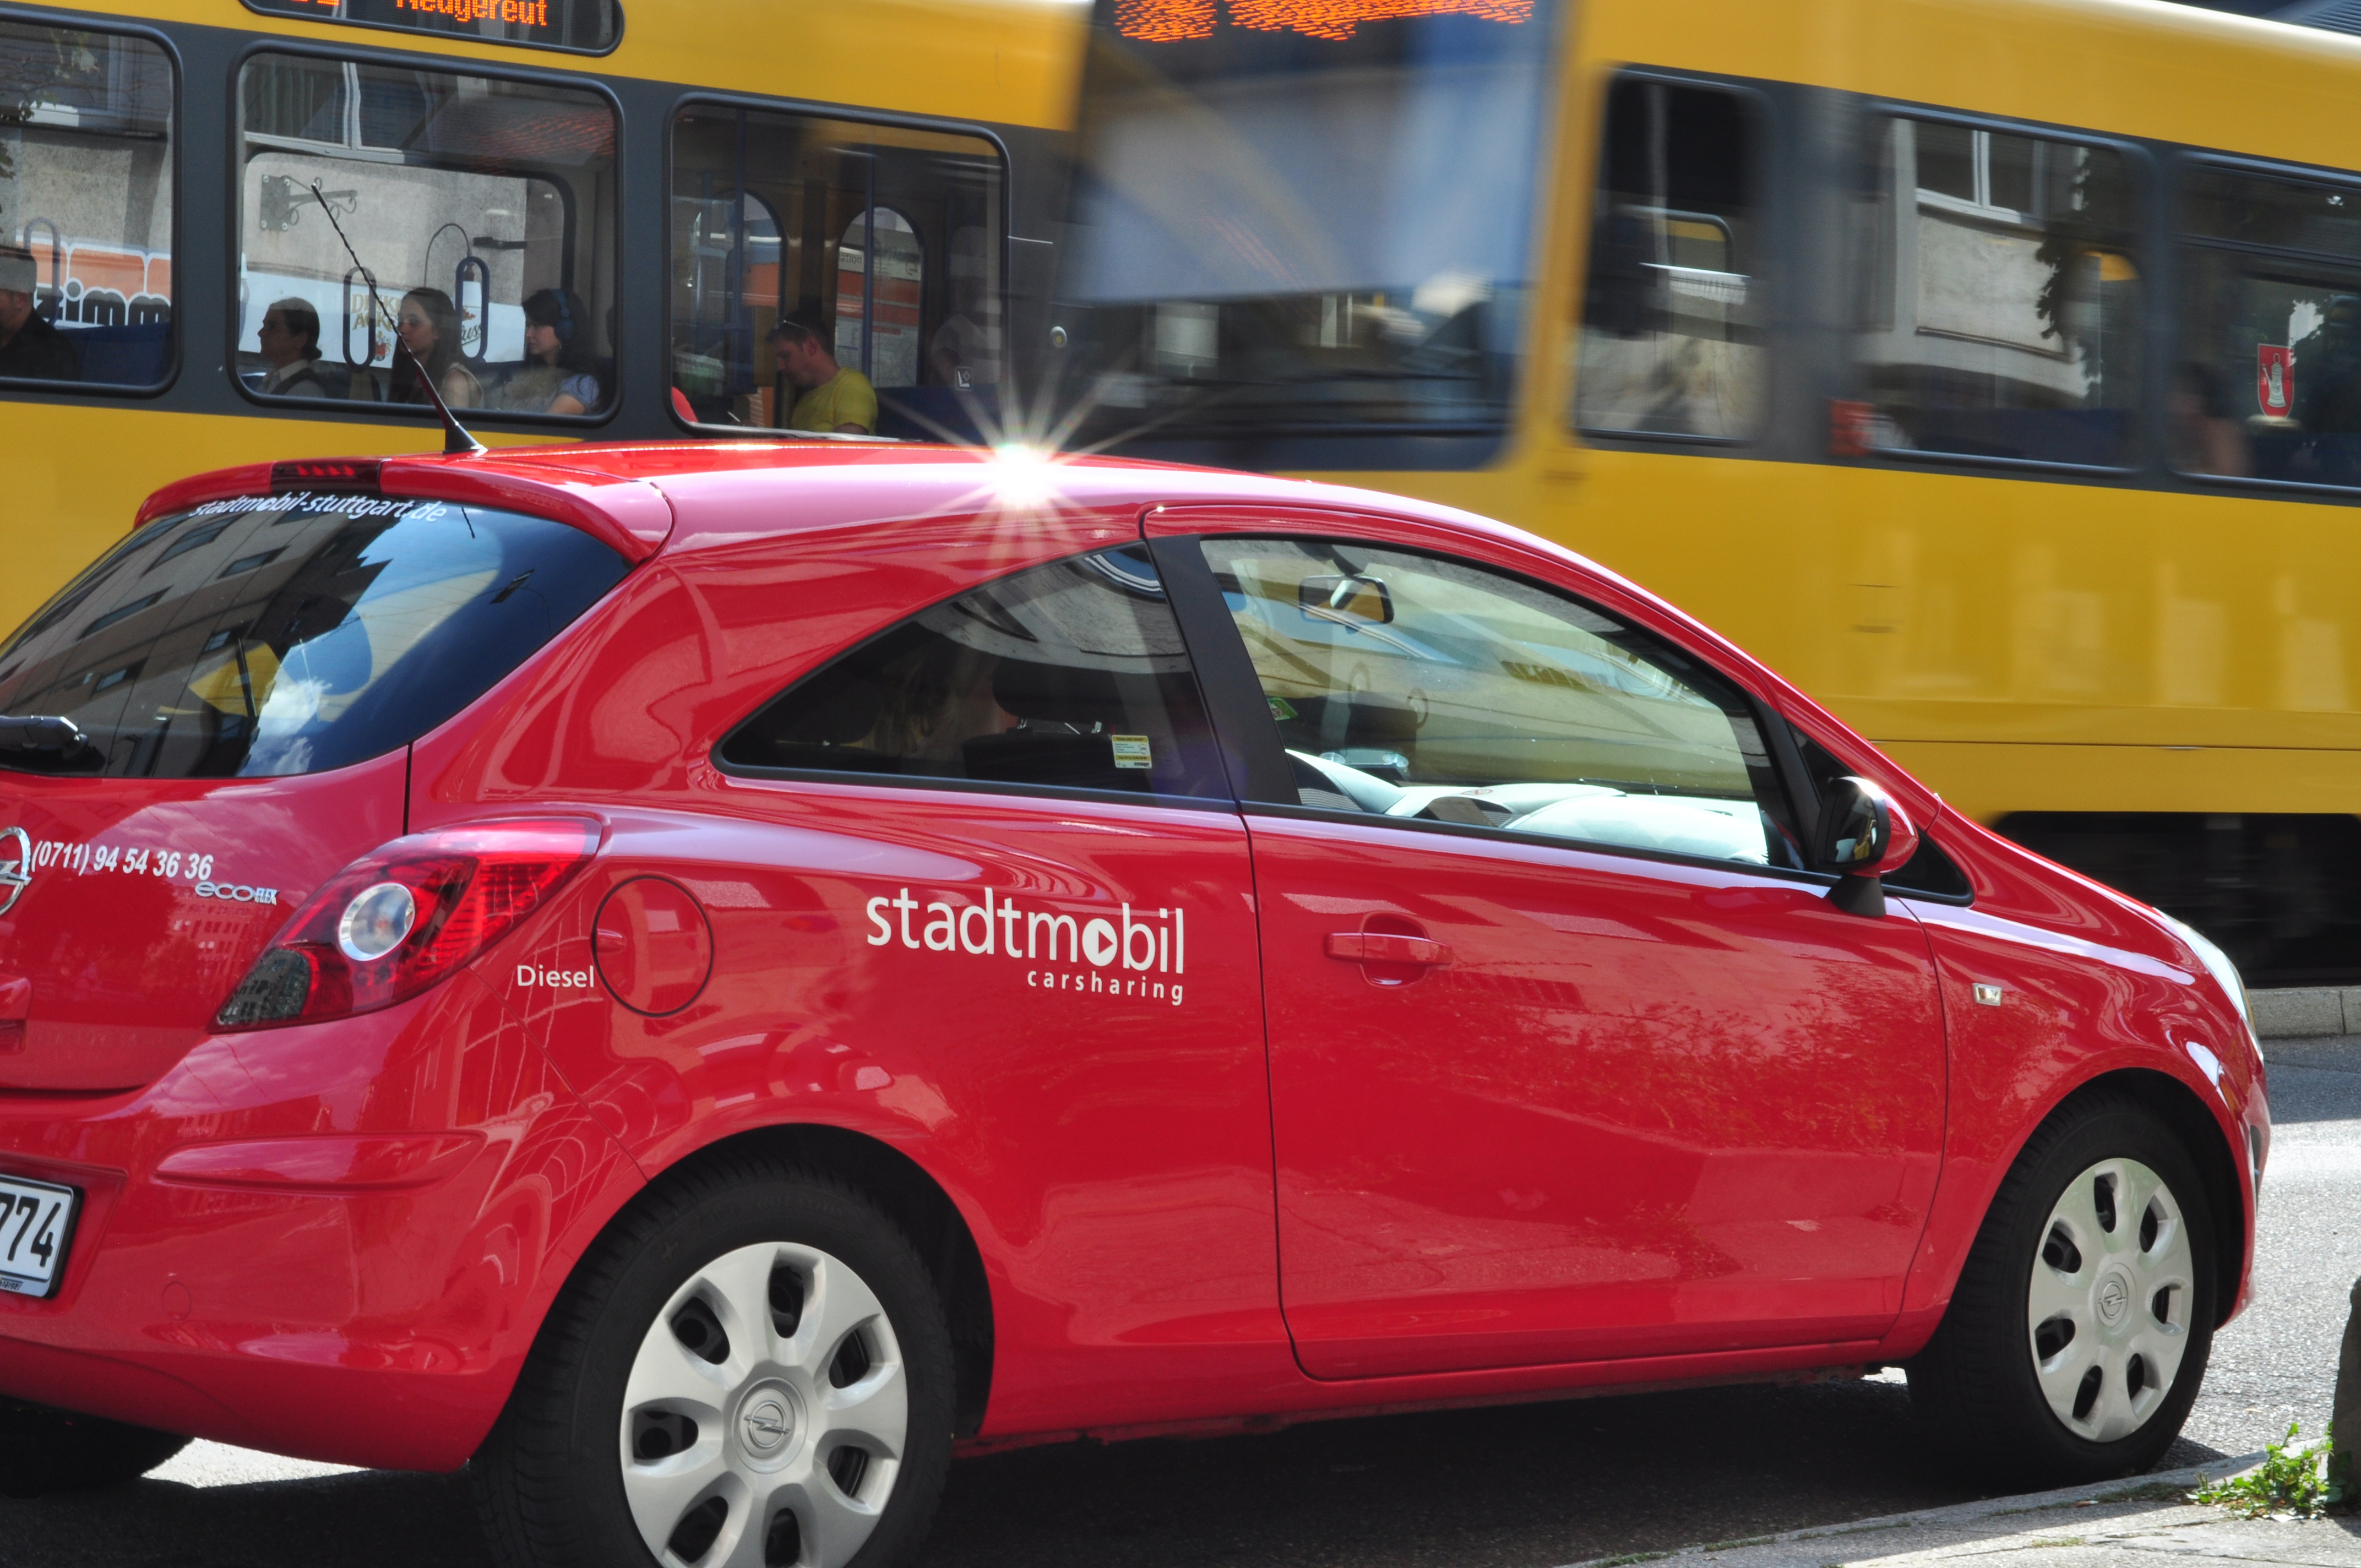 Bild 8 stadtmobil carsharing AG in Stuttgart